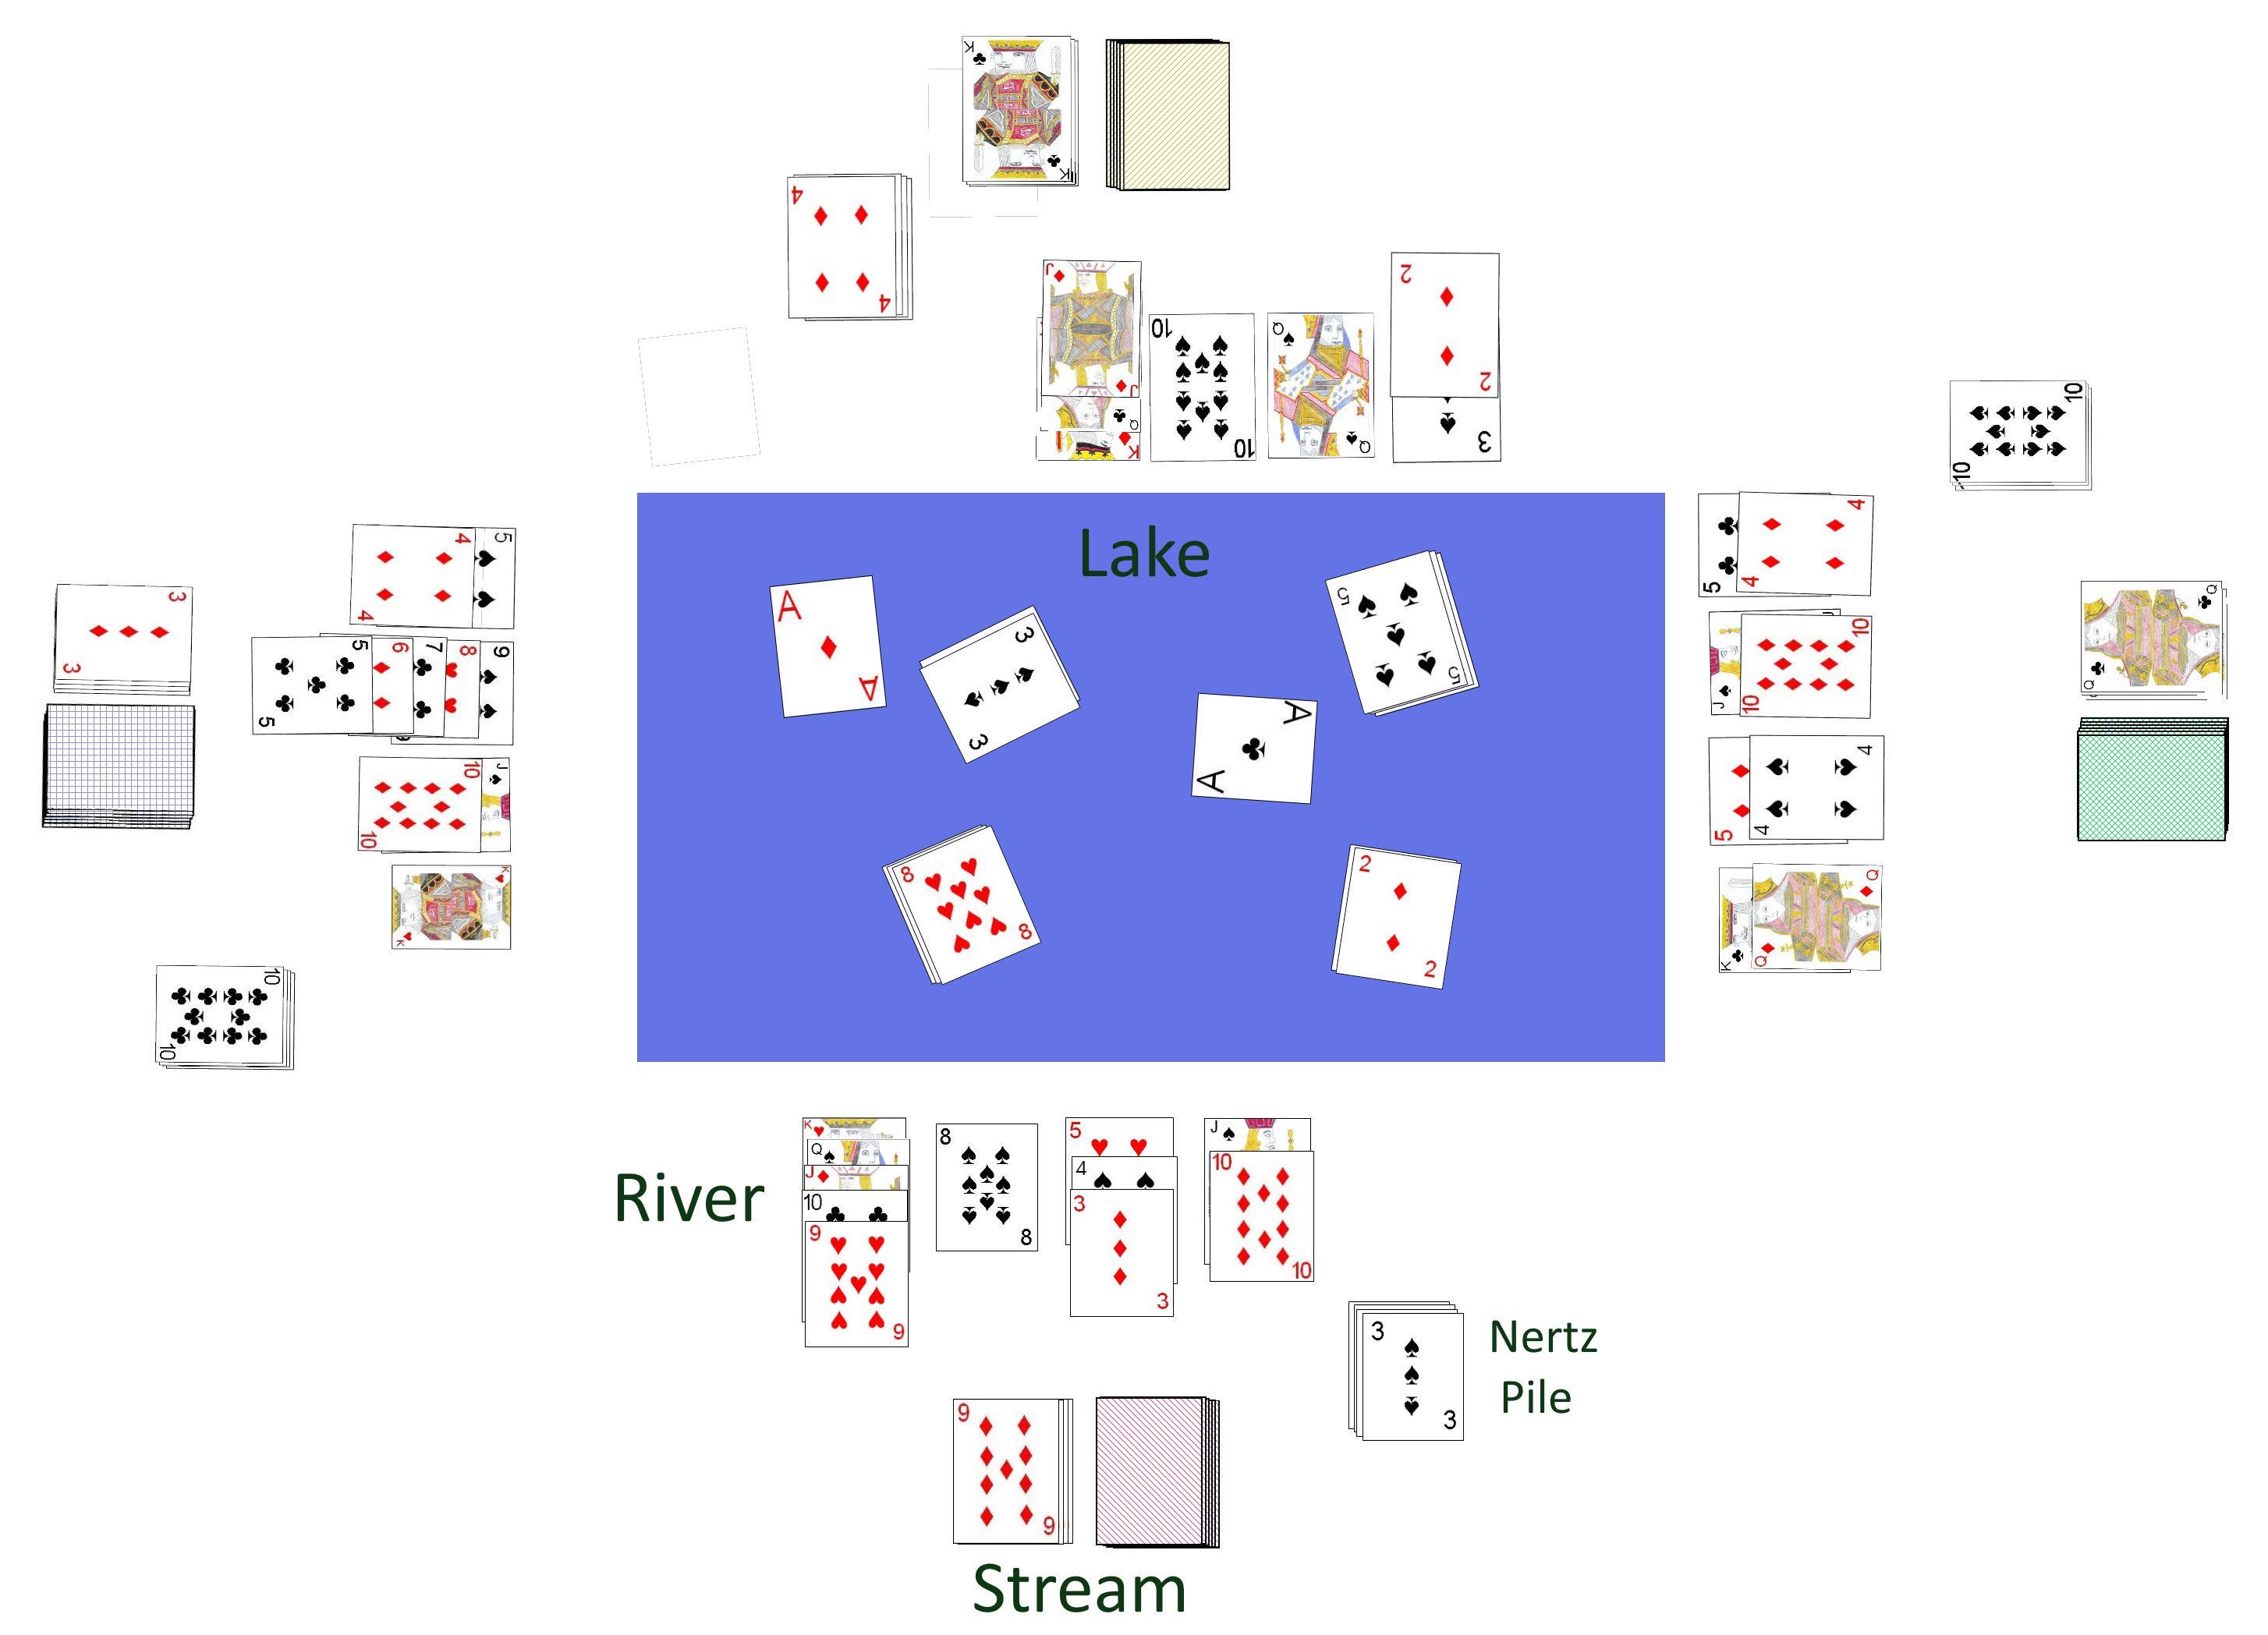 Four player game of Nertz in progress